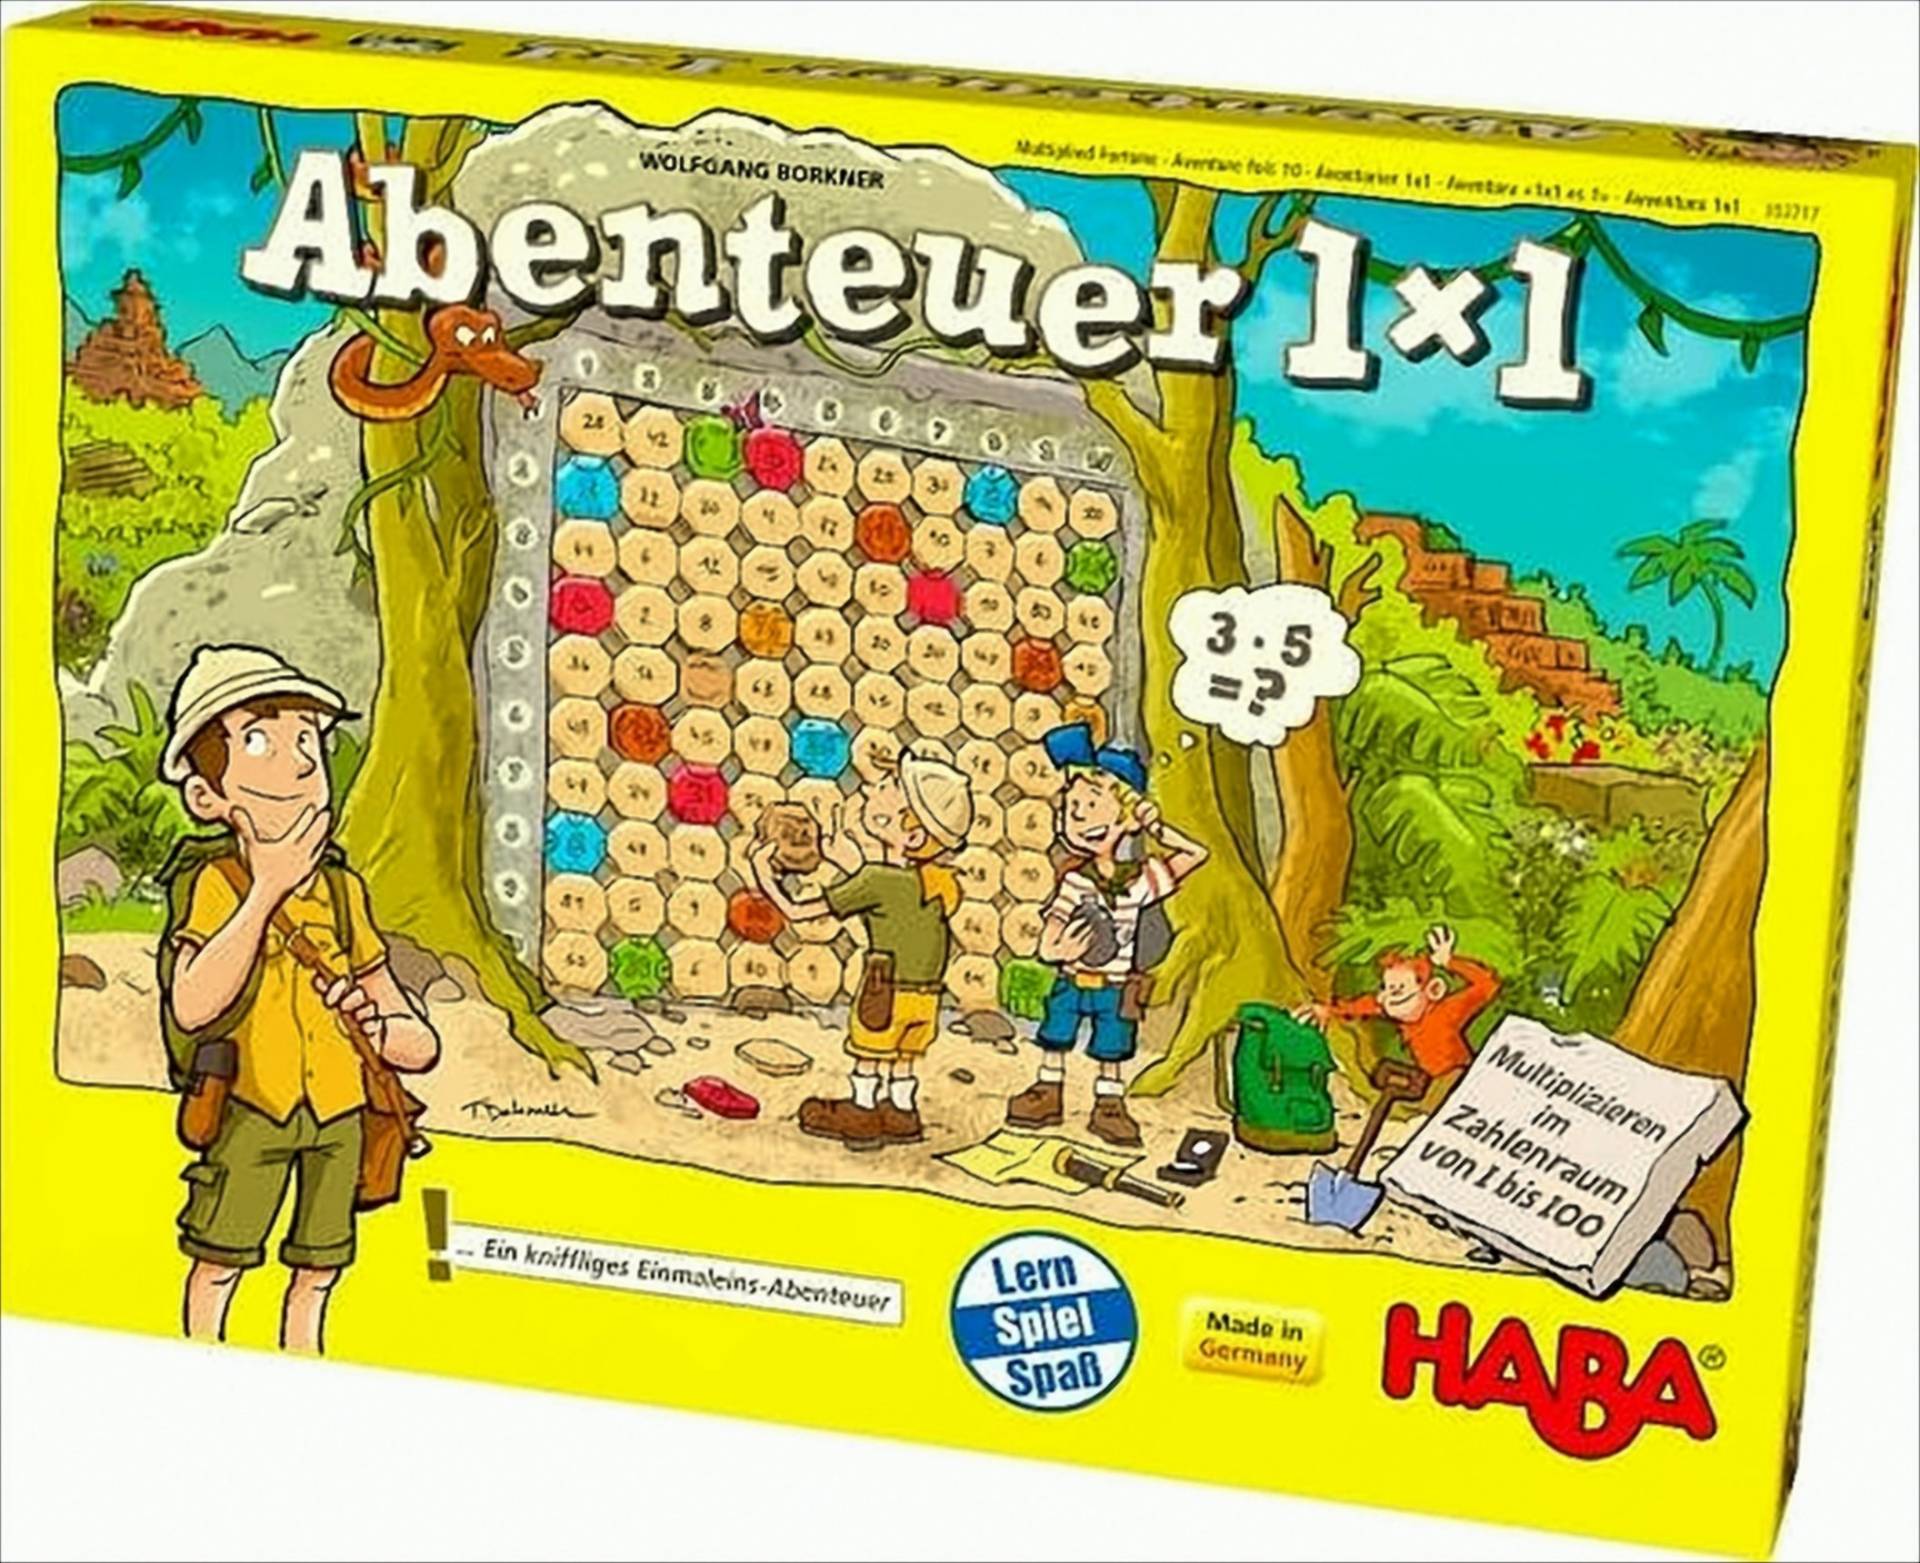 Abenteuer 1x1 von HABA Sales GmbH & Co. KG